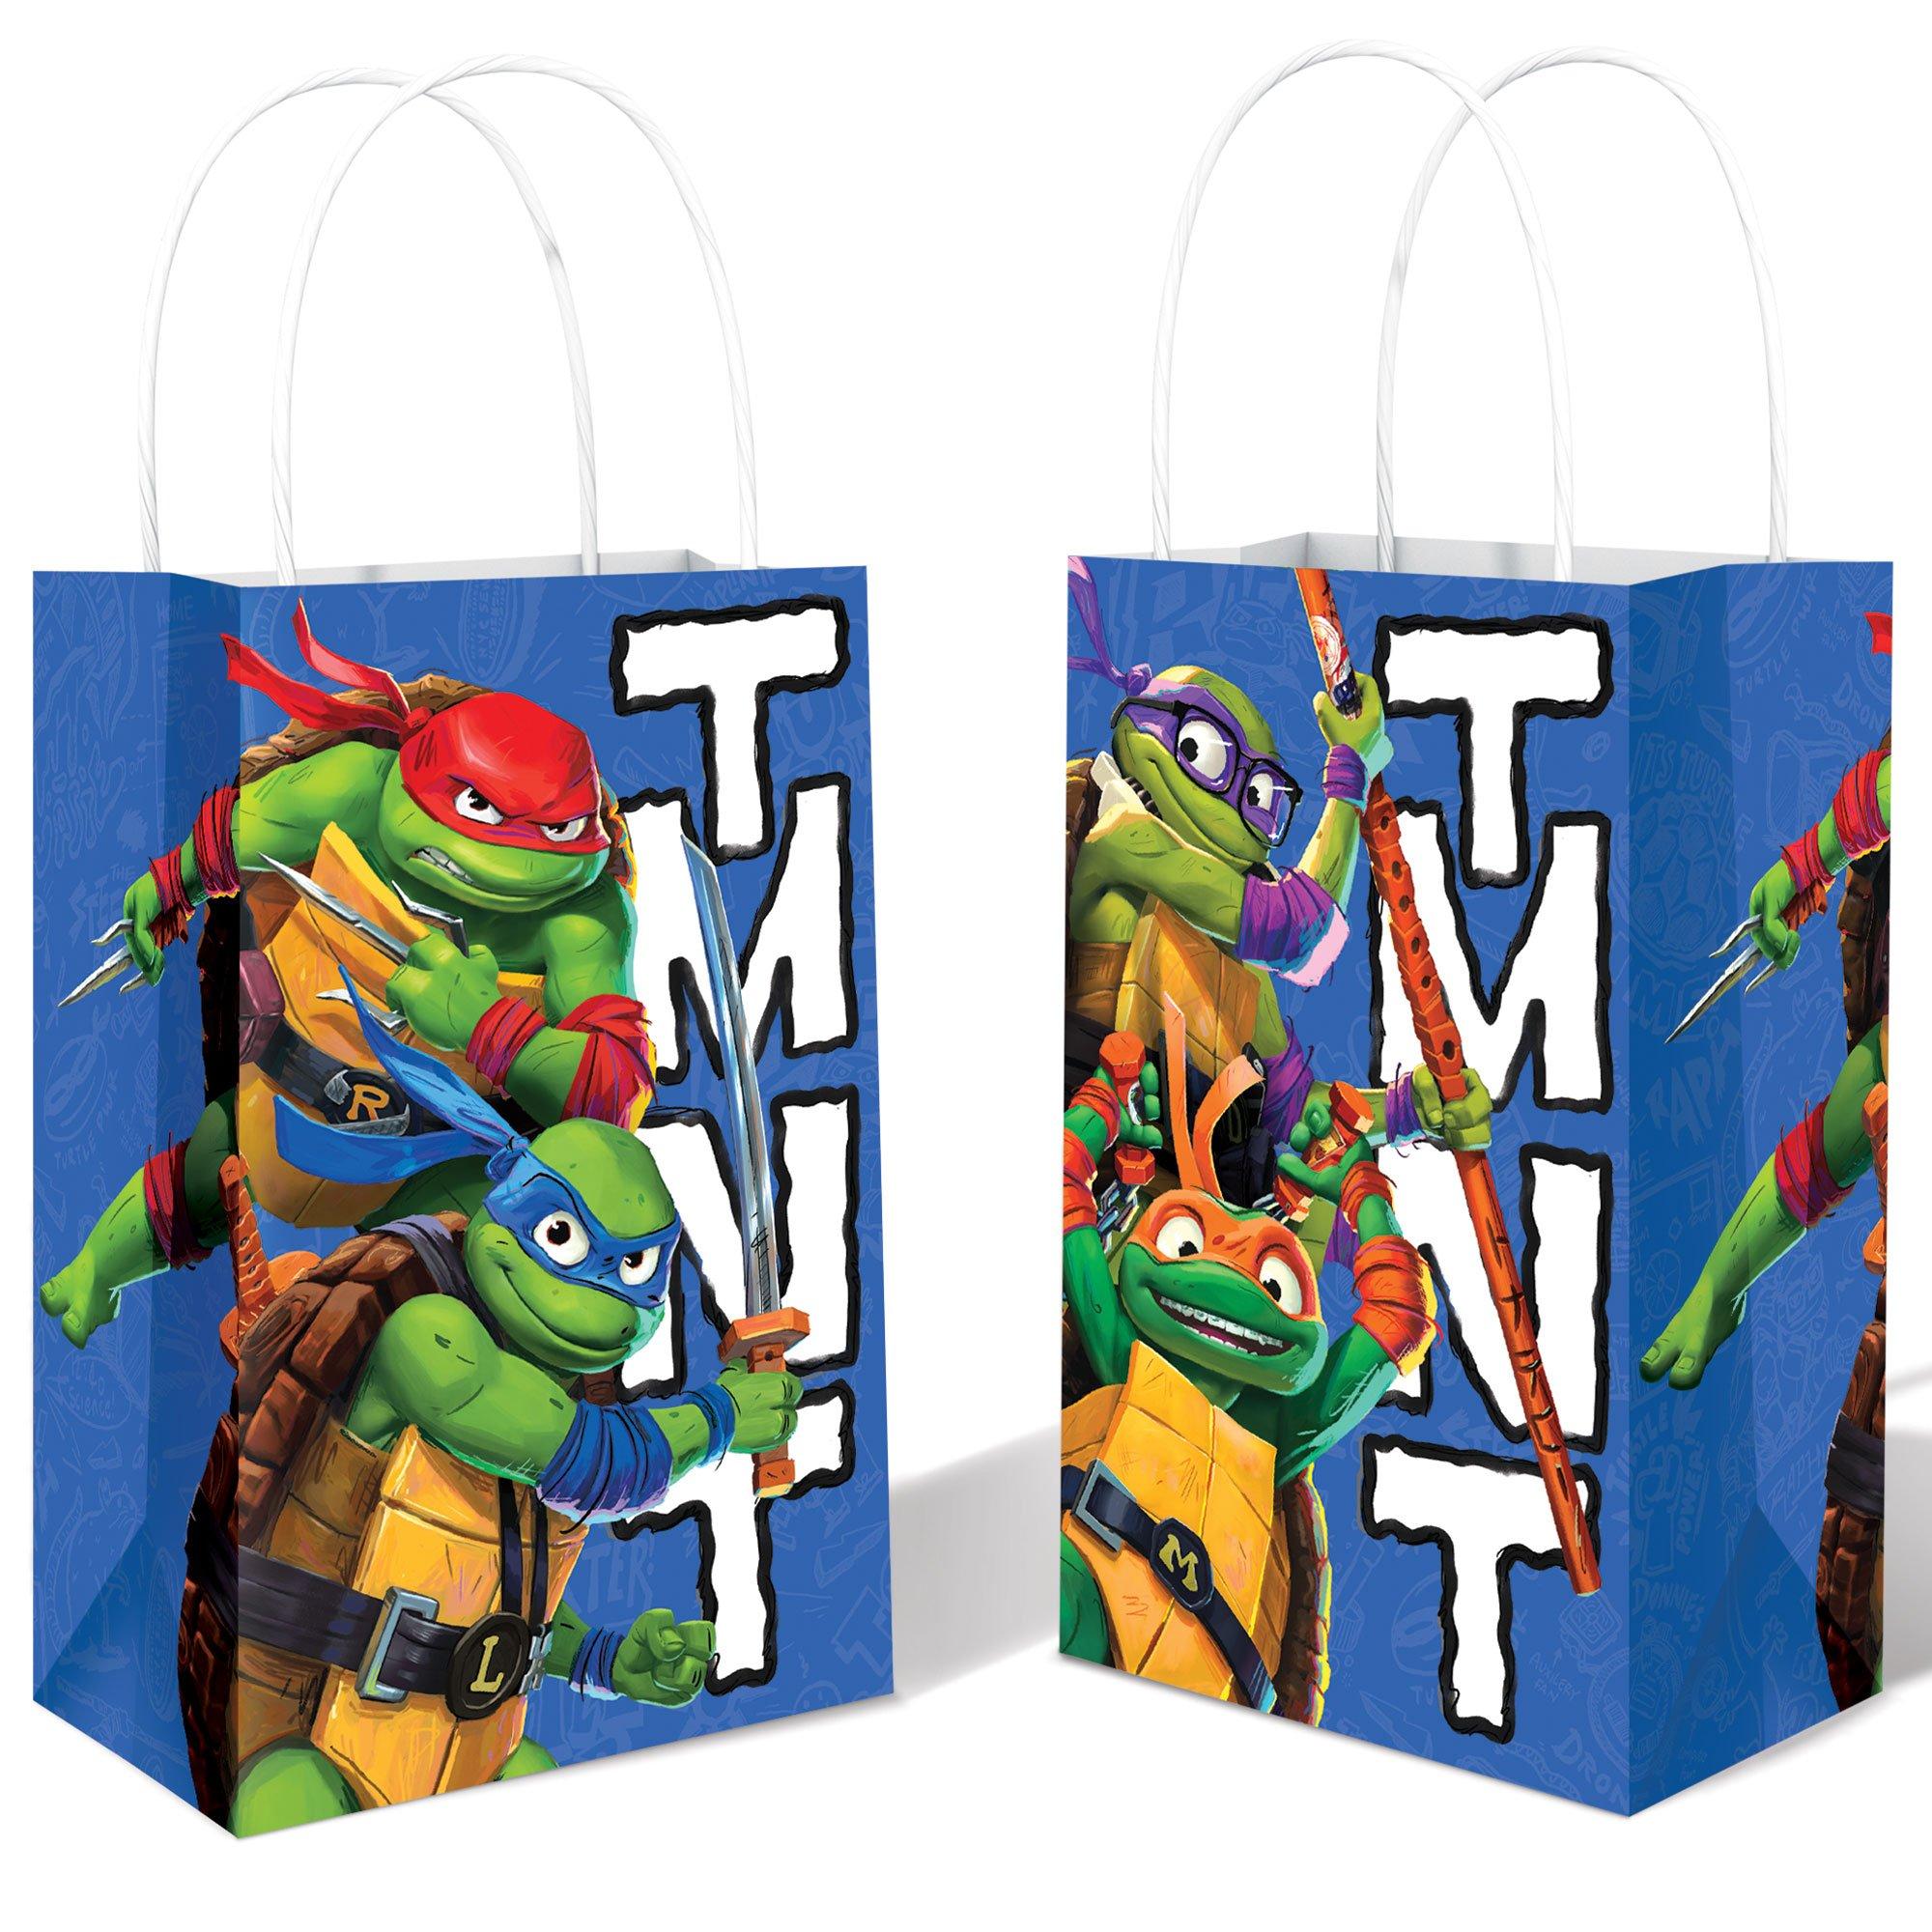 TMNT Paper Favor Bags, 5in x 8.25in, 8ct - Teenage Mutant Ninja Turtles: Mutant Mayhem